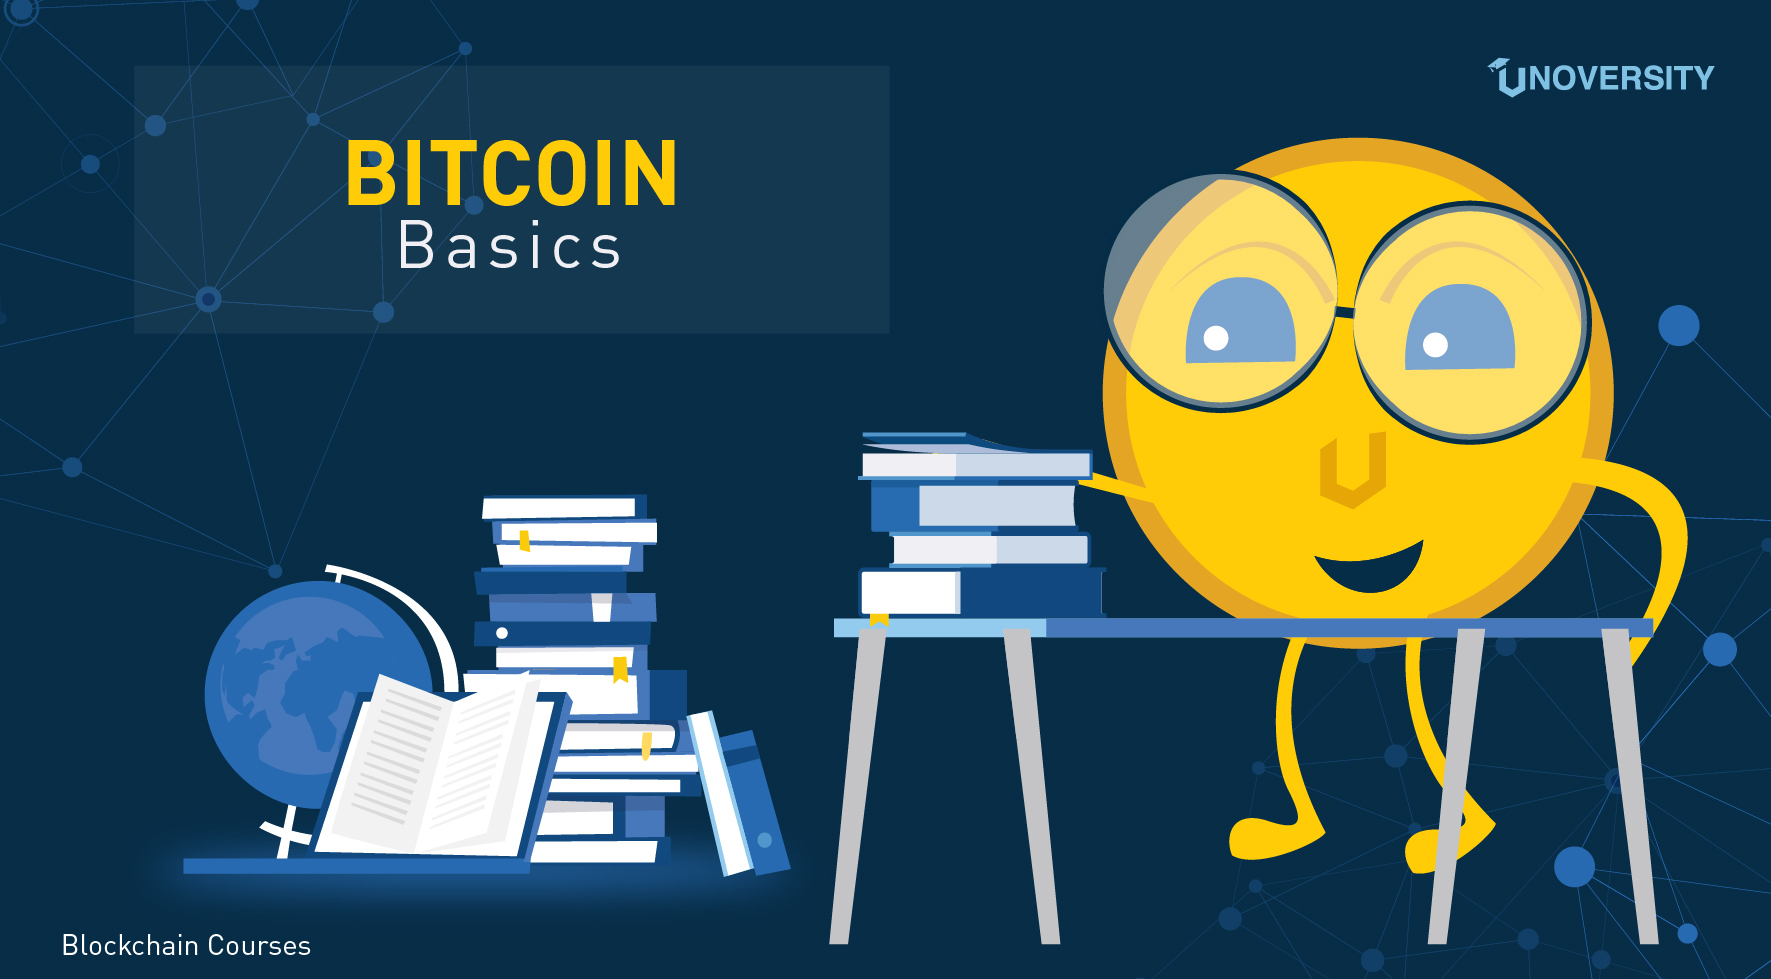 Bitcoin Basics